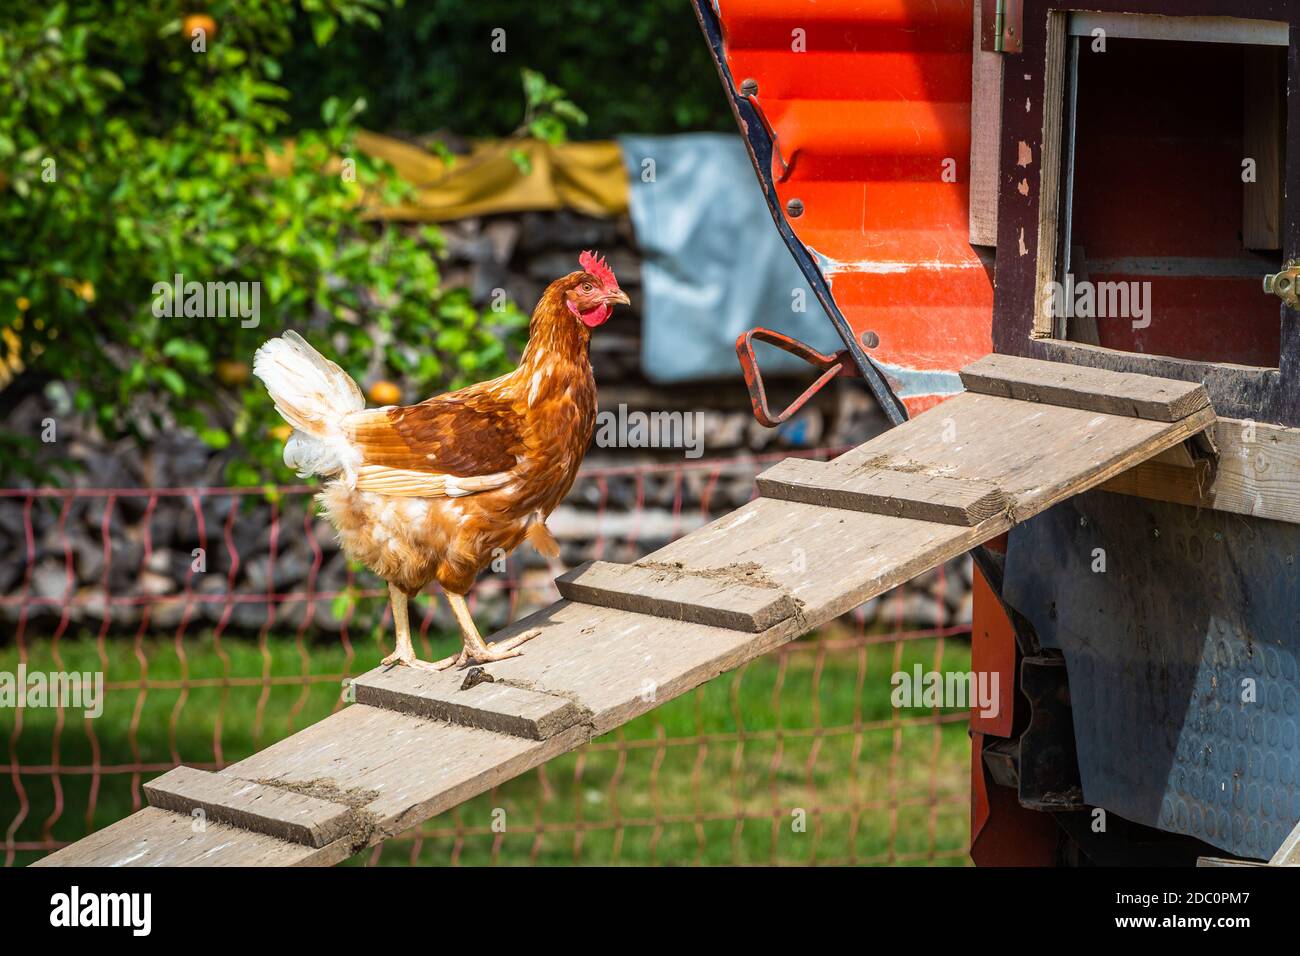 Chicken ladder immagini e fotografie stock ad alta risoluzione - Alamy